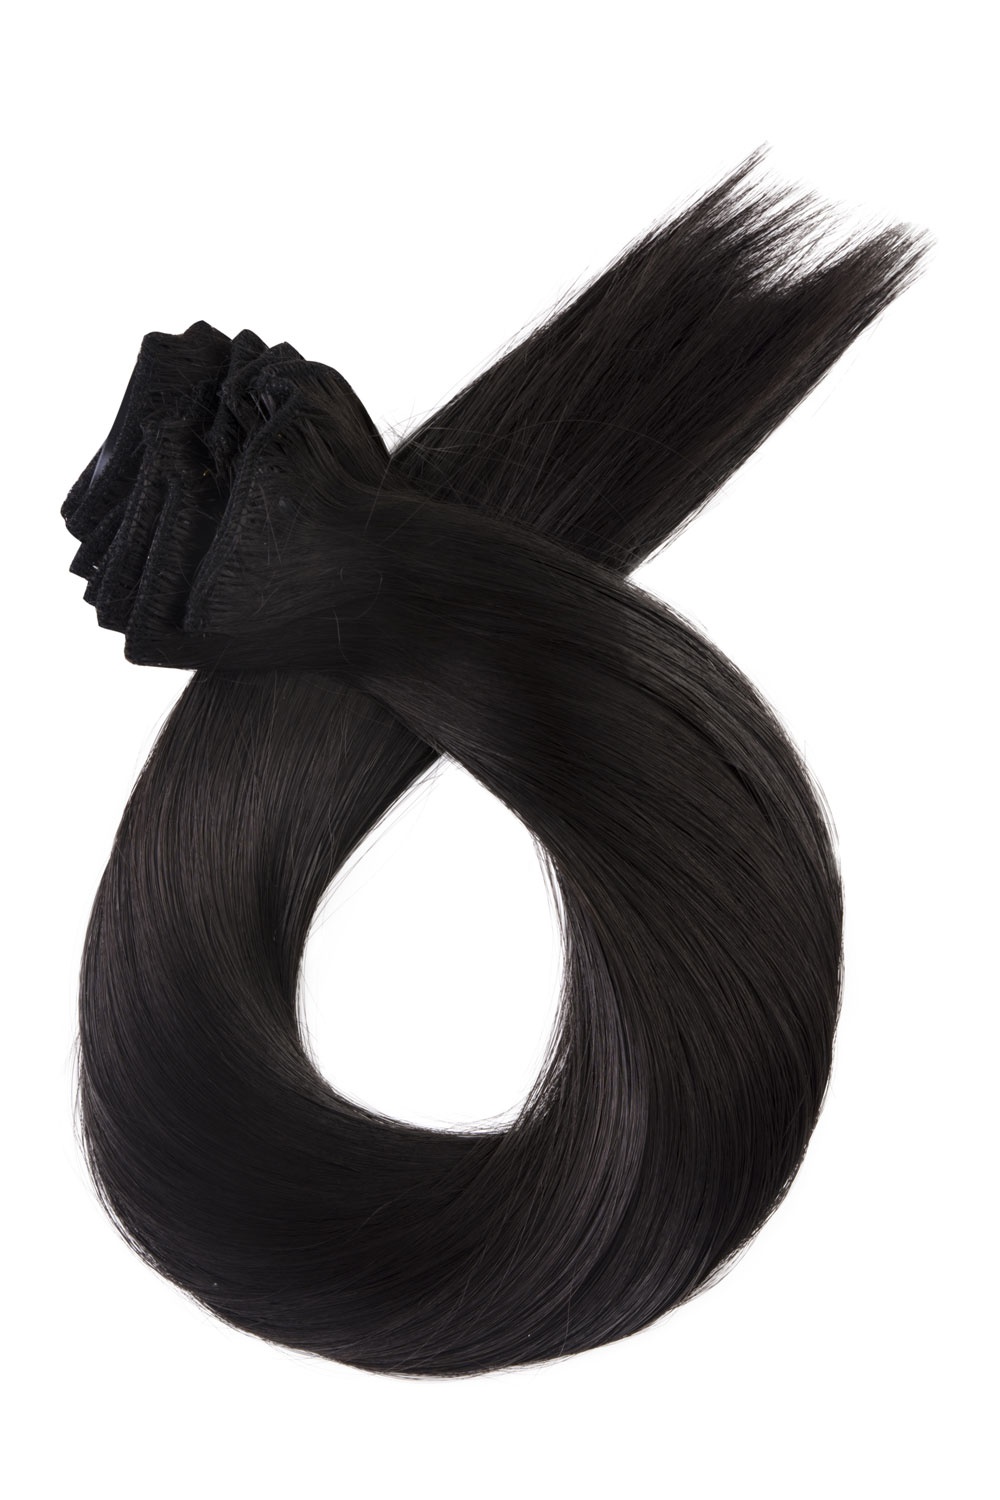 Tmavo hnedé clip in vlasy, 60cm, 115g, farba 2